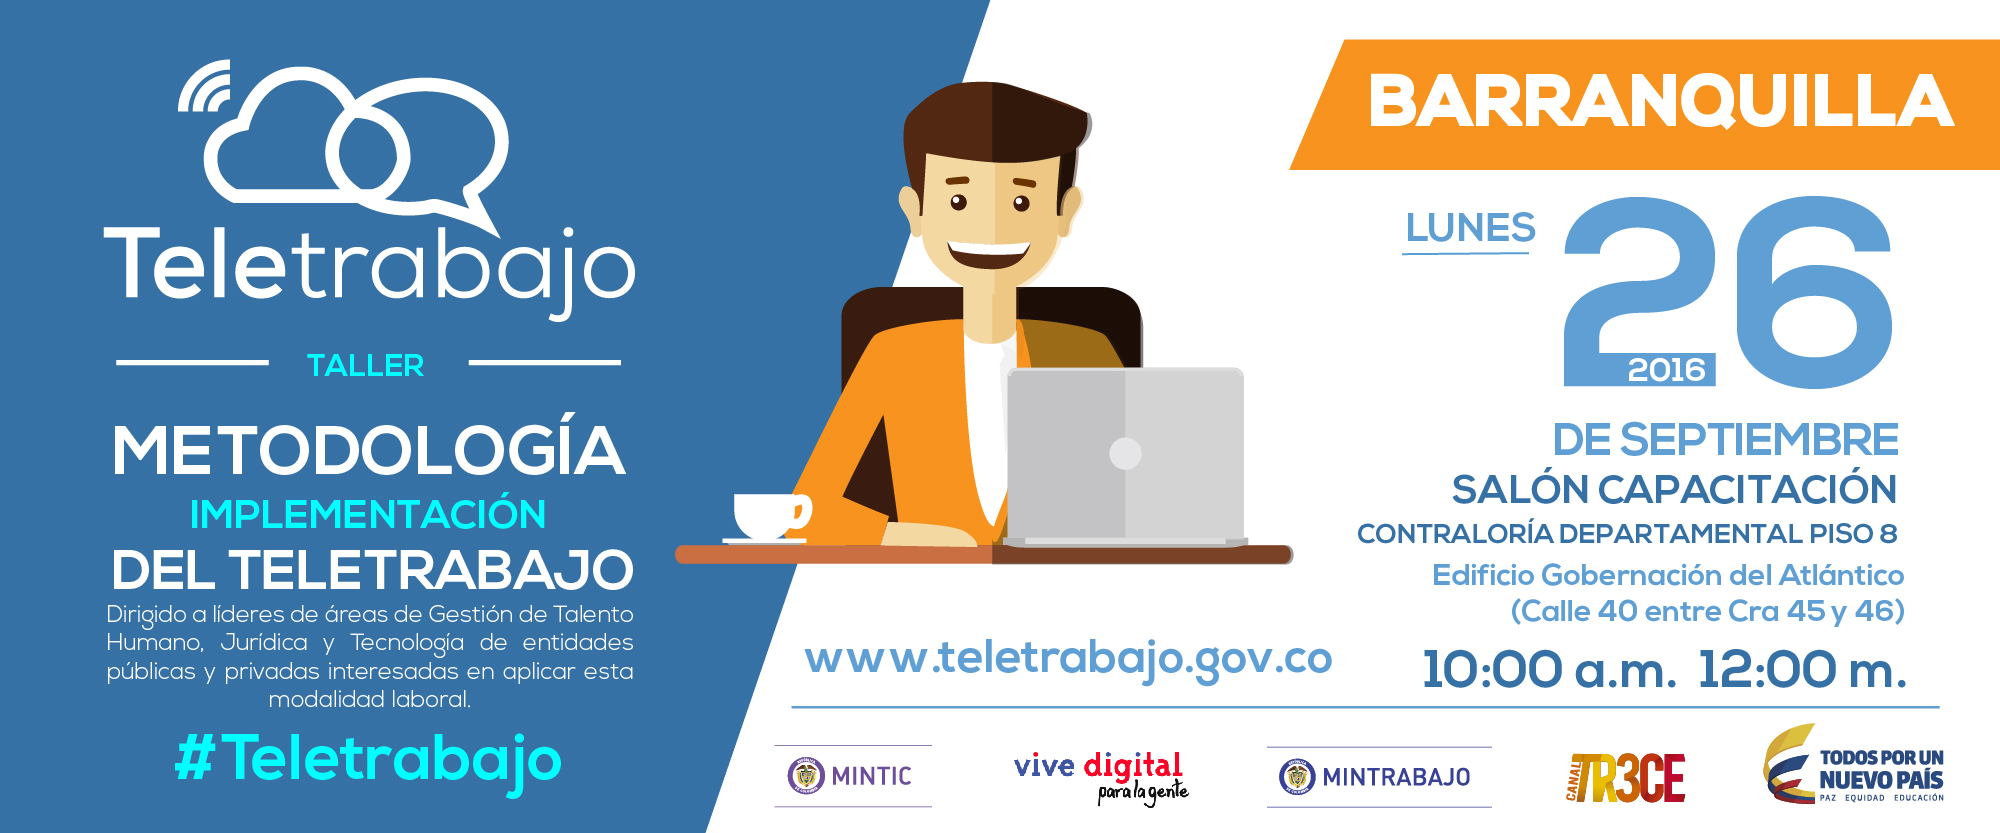  Ministerios TIC y del Trabajo dictan taller gratuito en Barranquilla sobre Teletrabajo